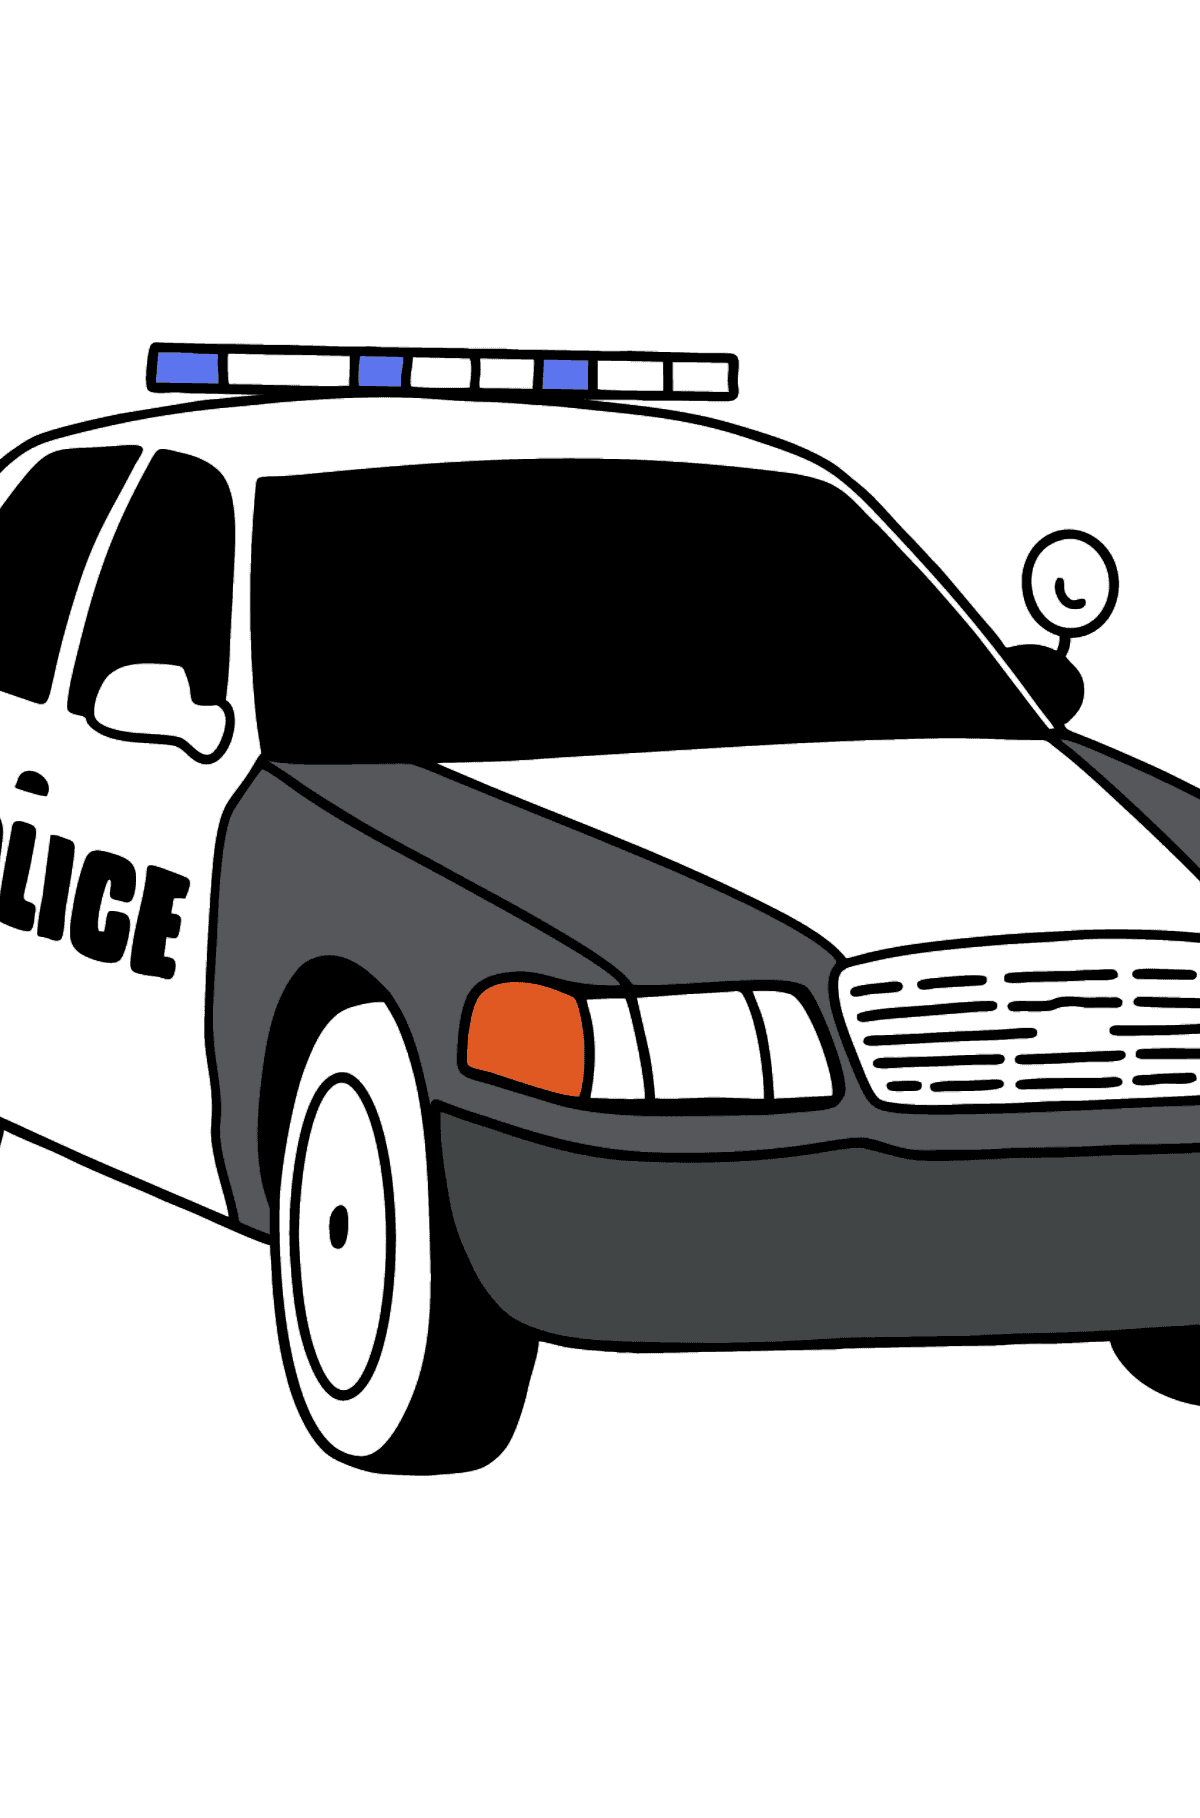 US Police Car Ausmalbild - Malvorlagen für Kinder